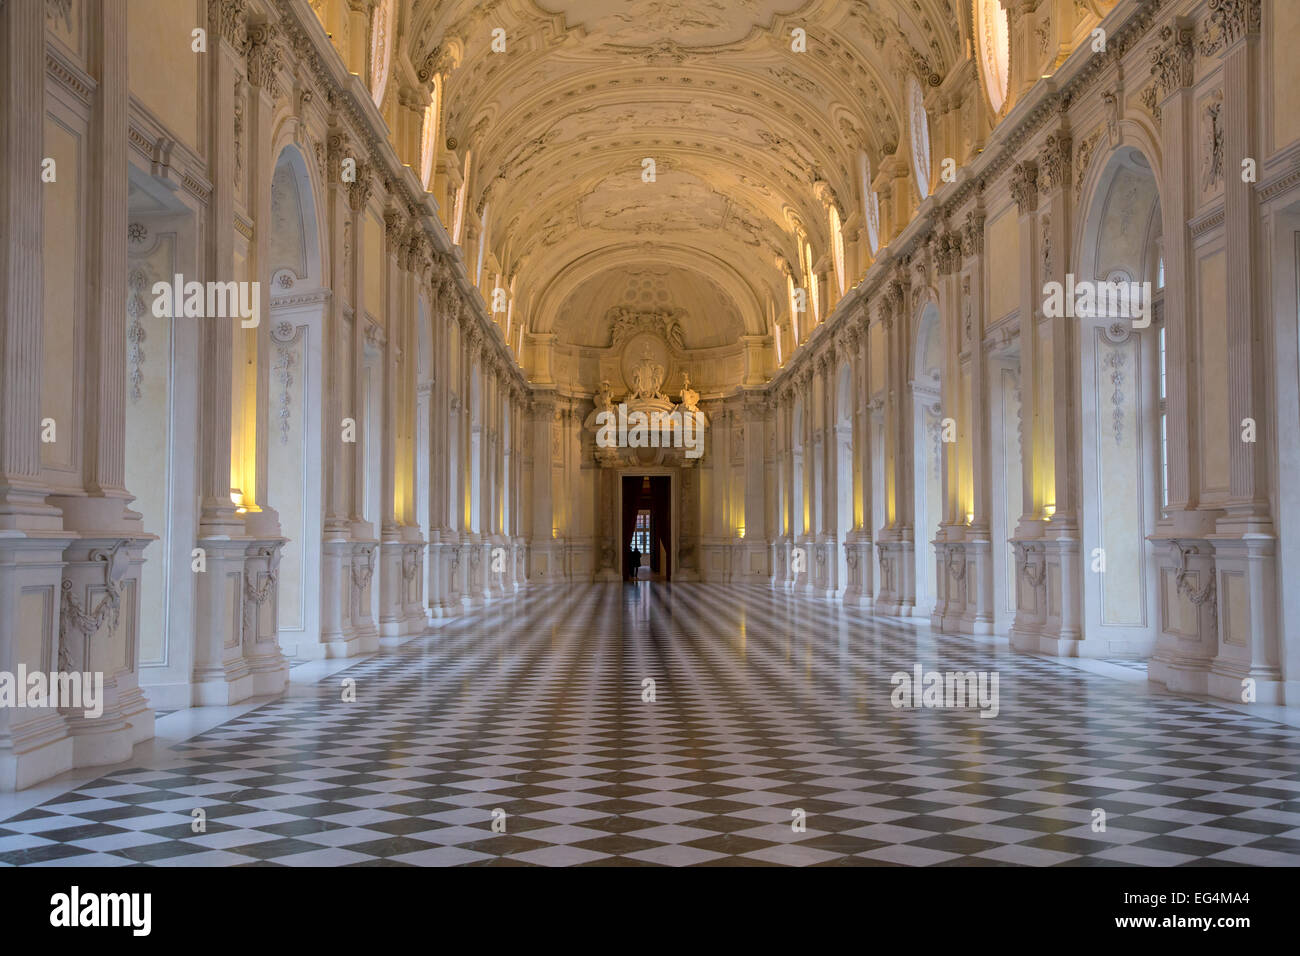 Galleria di Diana in the Reggia di Venaria Reale, the Savoy royal palace, Turin, Italy Stock Photo